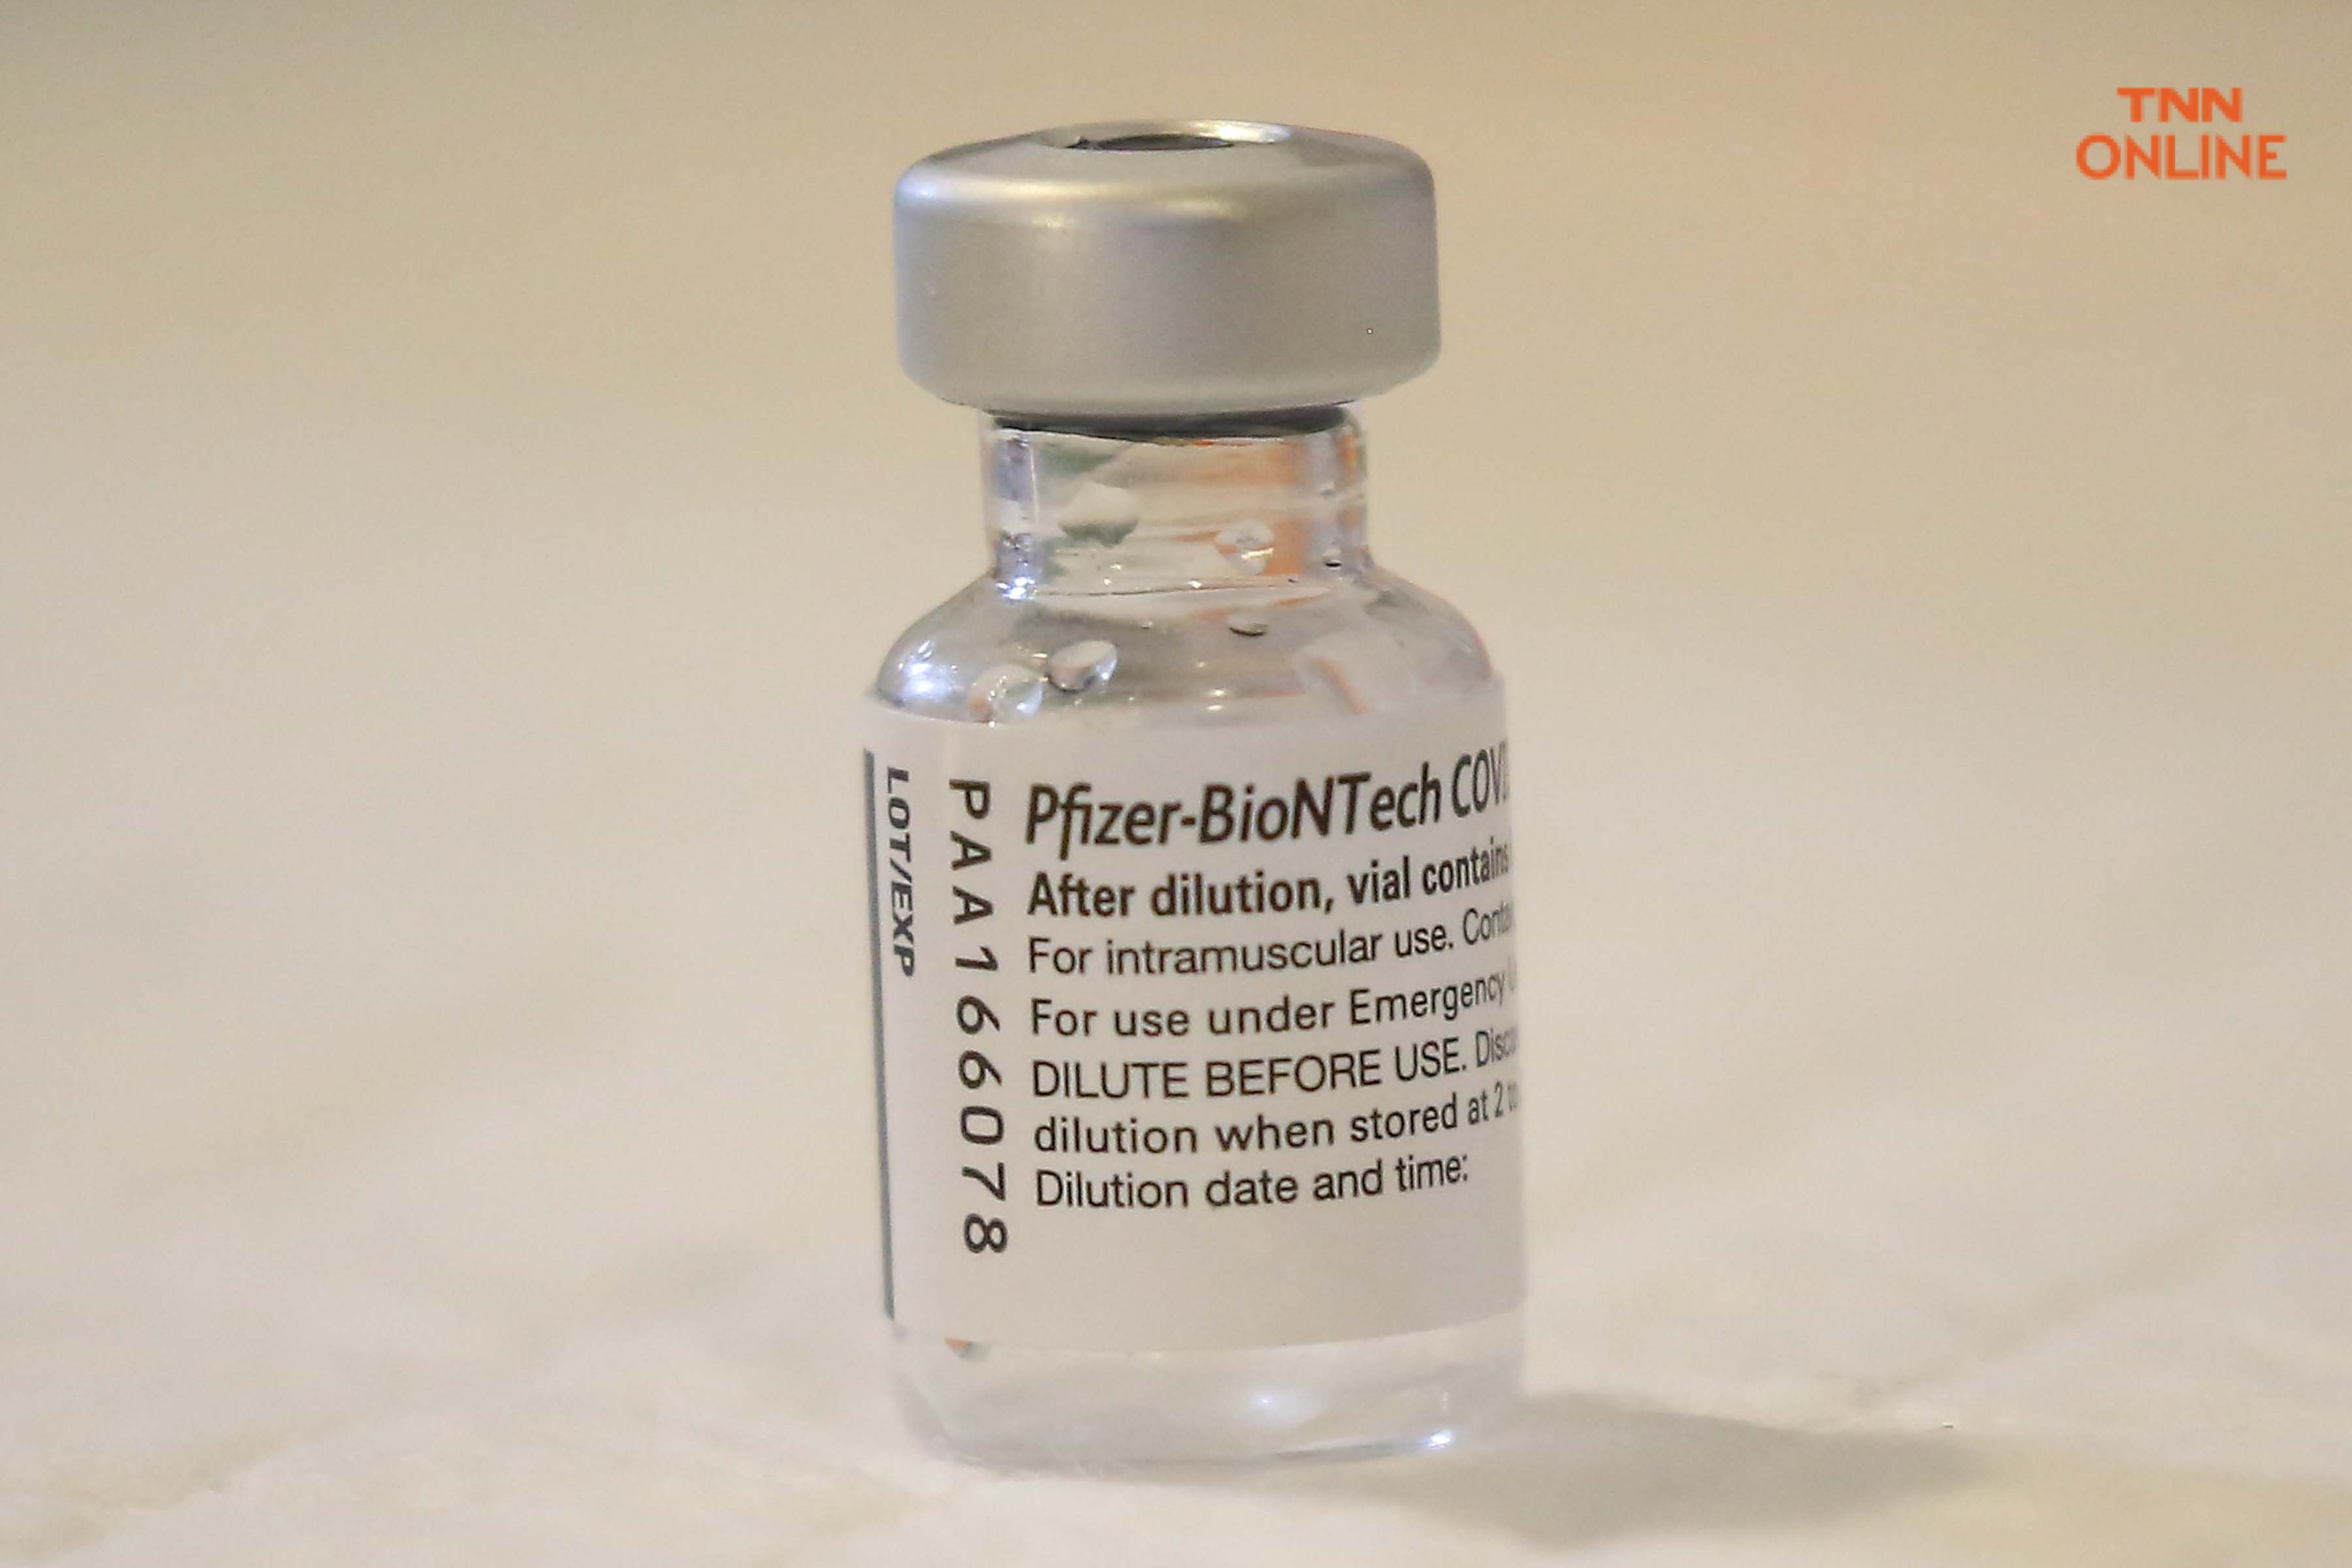 บุคลากรทางการแพทย์เข้ารับวัคซีนไฟเซอร์ภายหลังกระแสข่าวรายชื่อตกหล่นวัคซีนไม่ทั่วถึง